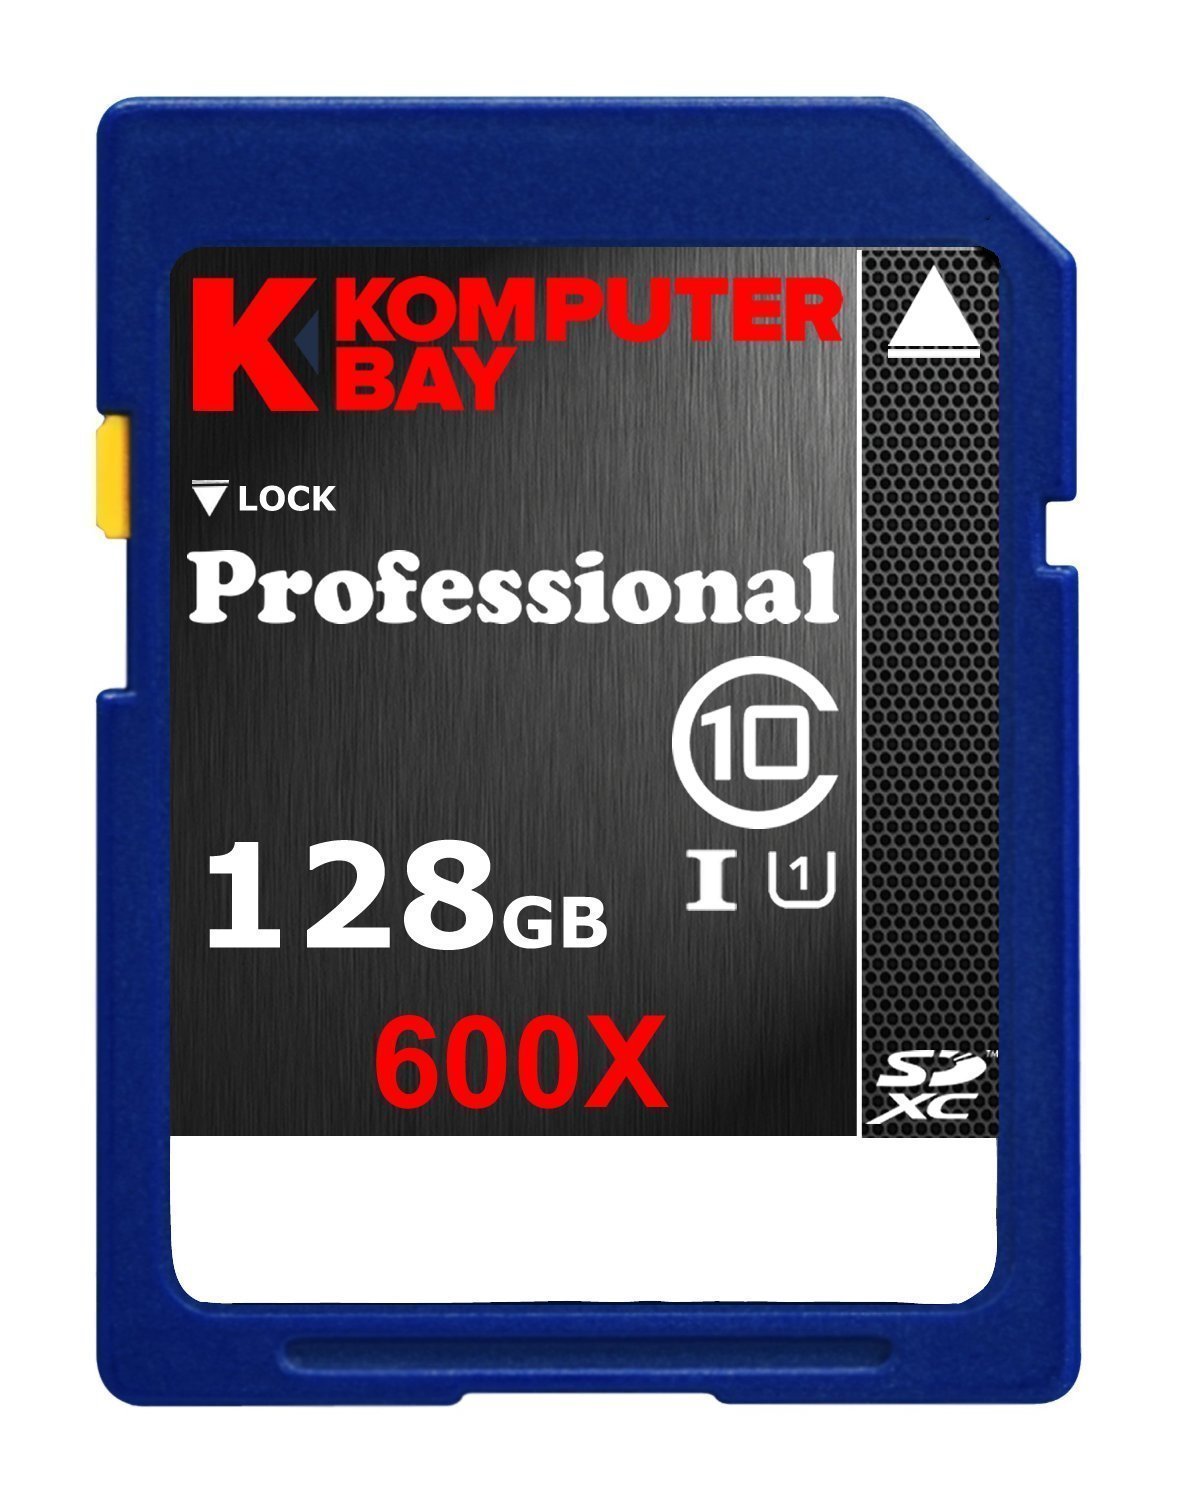 Komputerbay 128ギガバイト クラス10 SDXC UHS-I 600X 高速メモリーカード 60メガバイト秒の書き込み 9